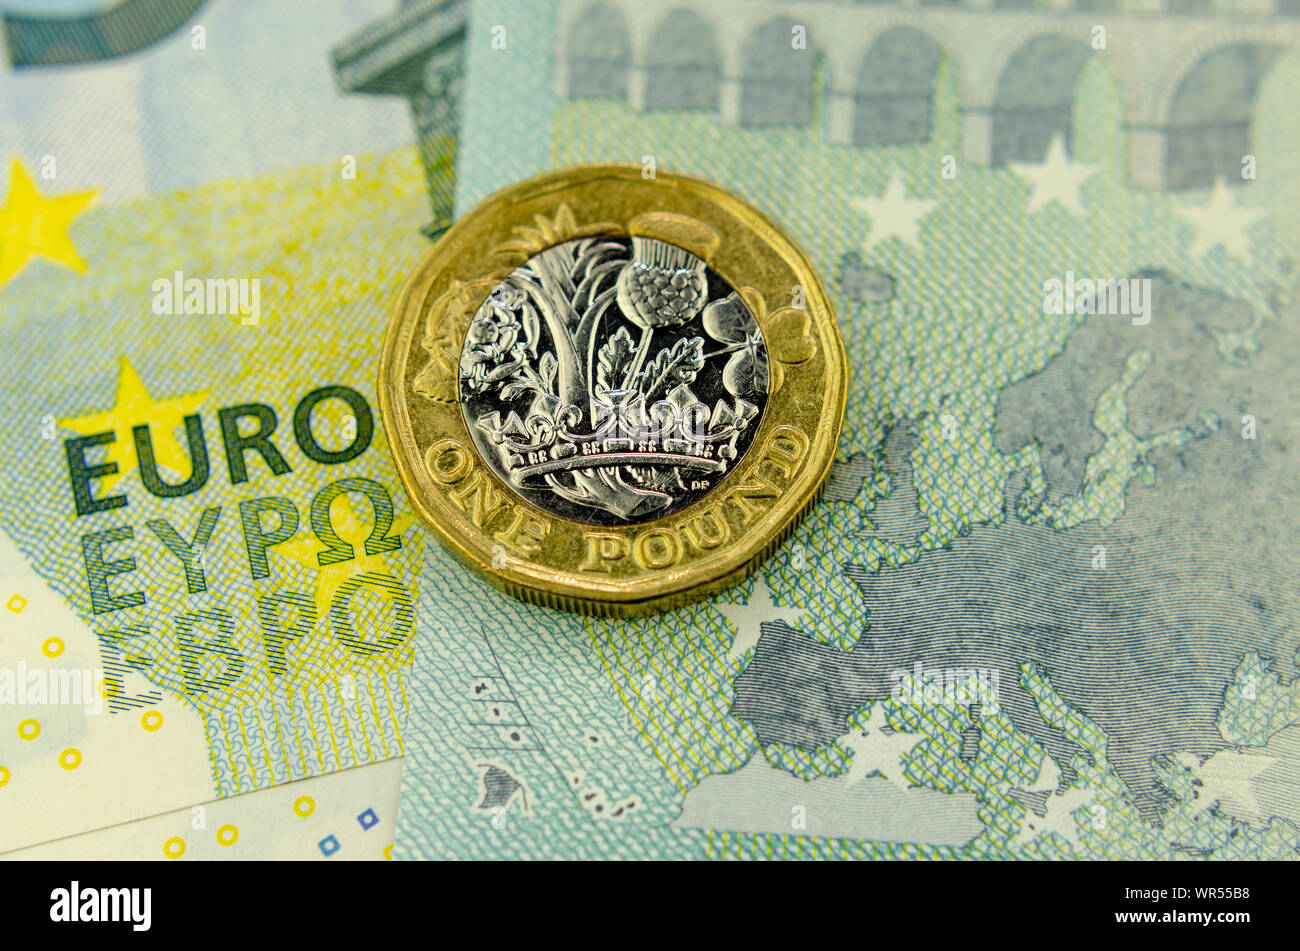 Pièce d'une livre sur le dessus de 5 Euros billet, à côté de la carte de l'UE et les mots d'euros. Mise à plat. Concept pour un bureau de change, des finances ou de l'UE - Royaume-Uni Banque D'Images